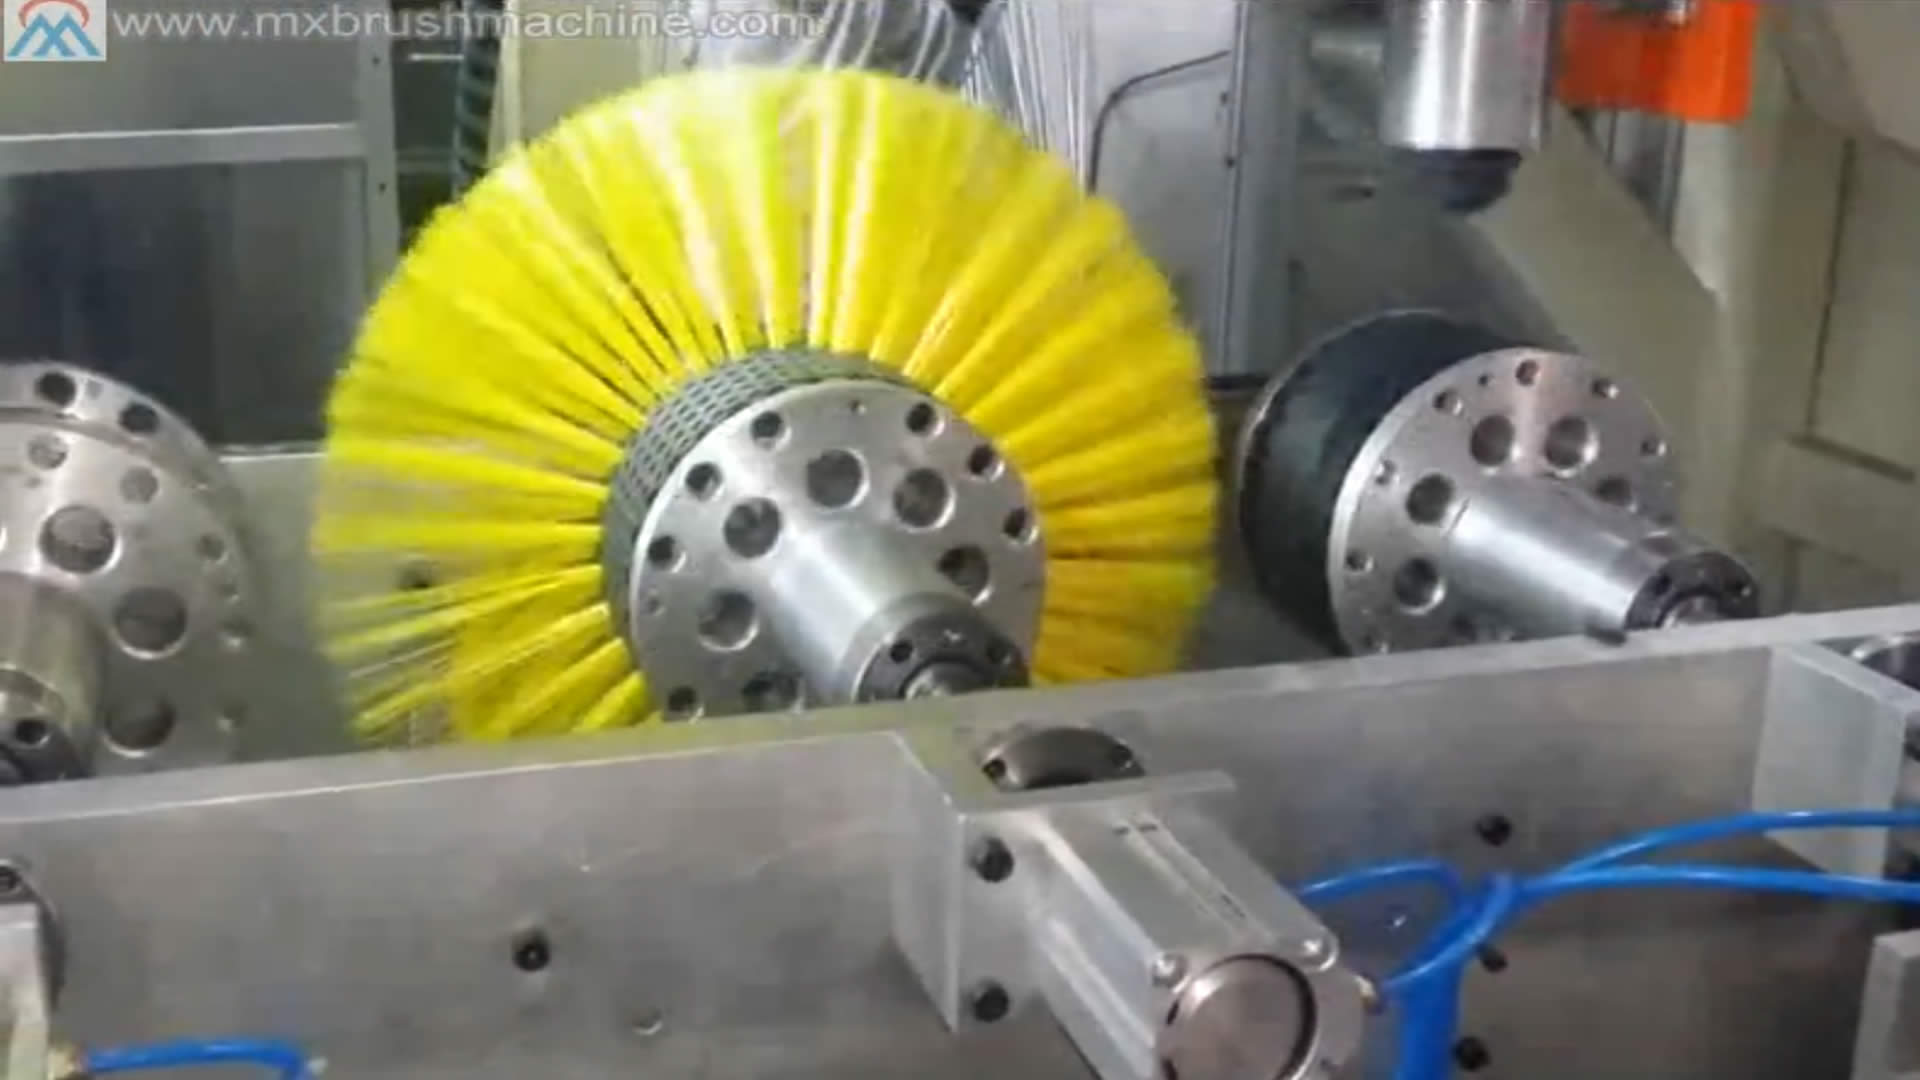 Machine de fabrication de touffetage de barres creuses en plastique